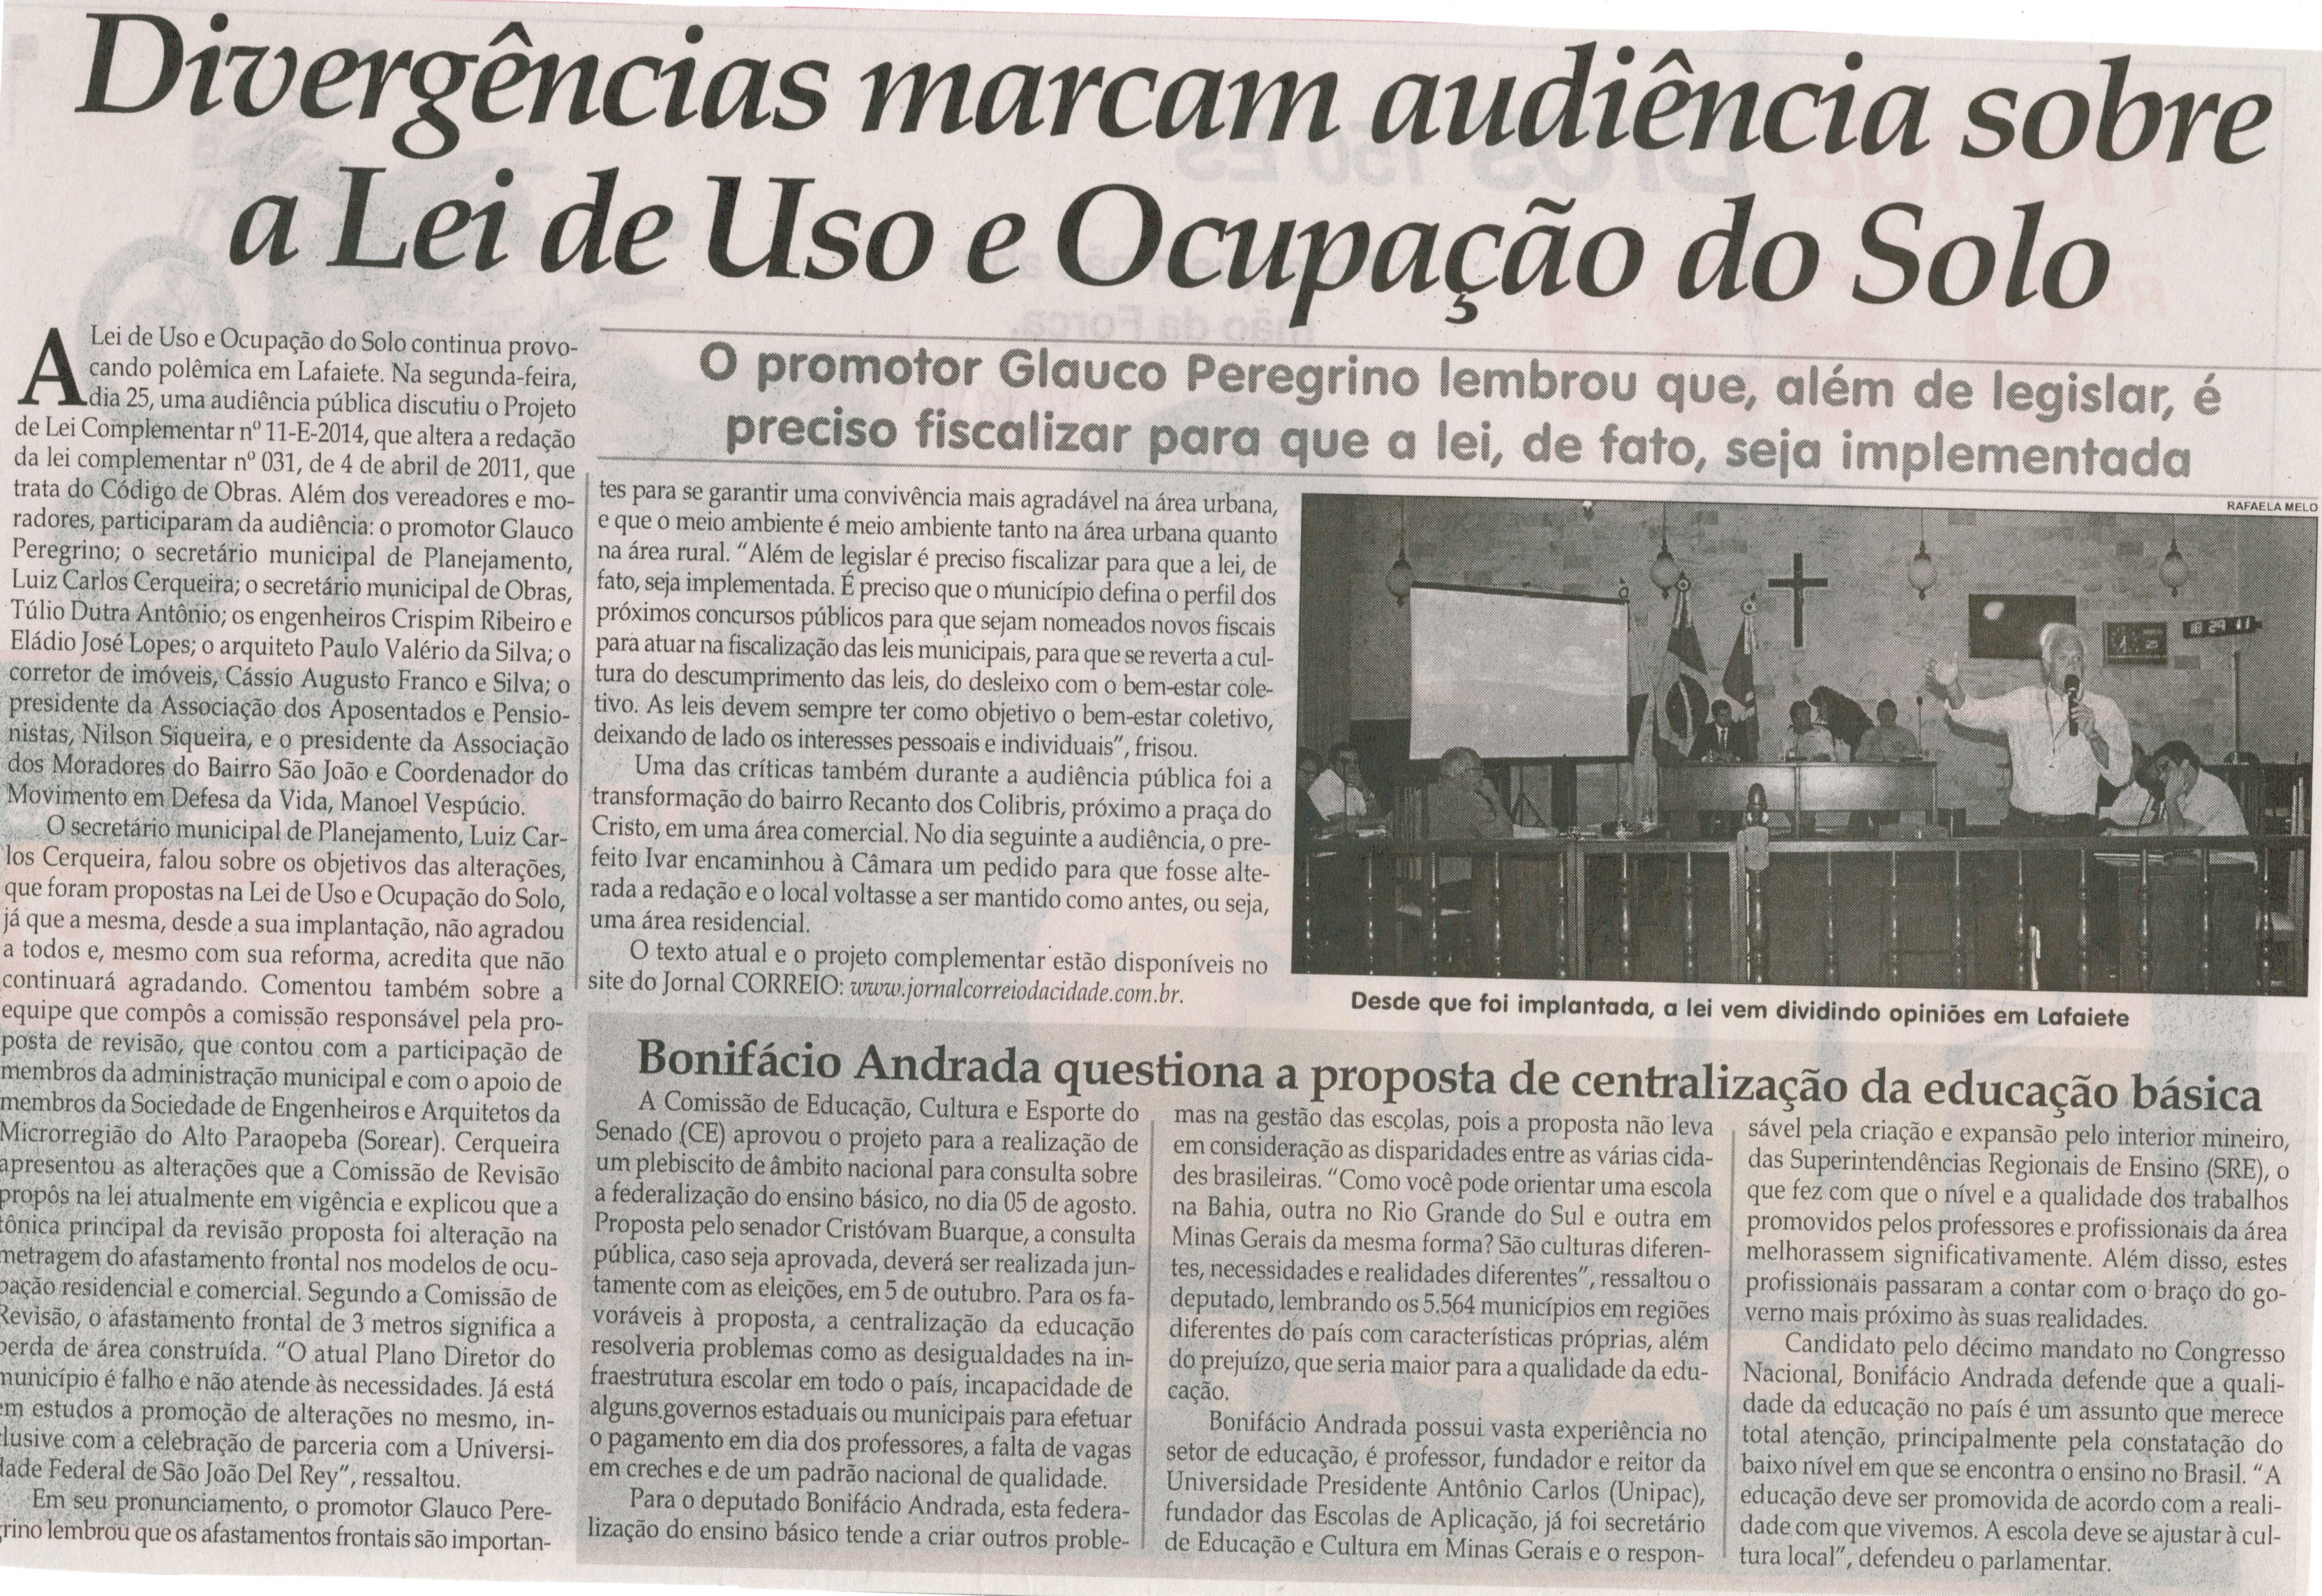 Divergências marcam audiência sobre Lei de Uso e Ocupação do Solo. Jornal Correio da Cidade, Conselheiro Lafaiete, 30 ago. 2014, p. 4.